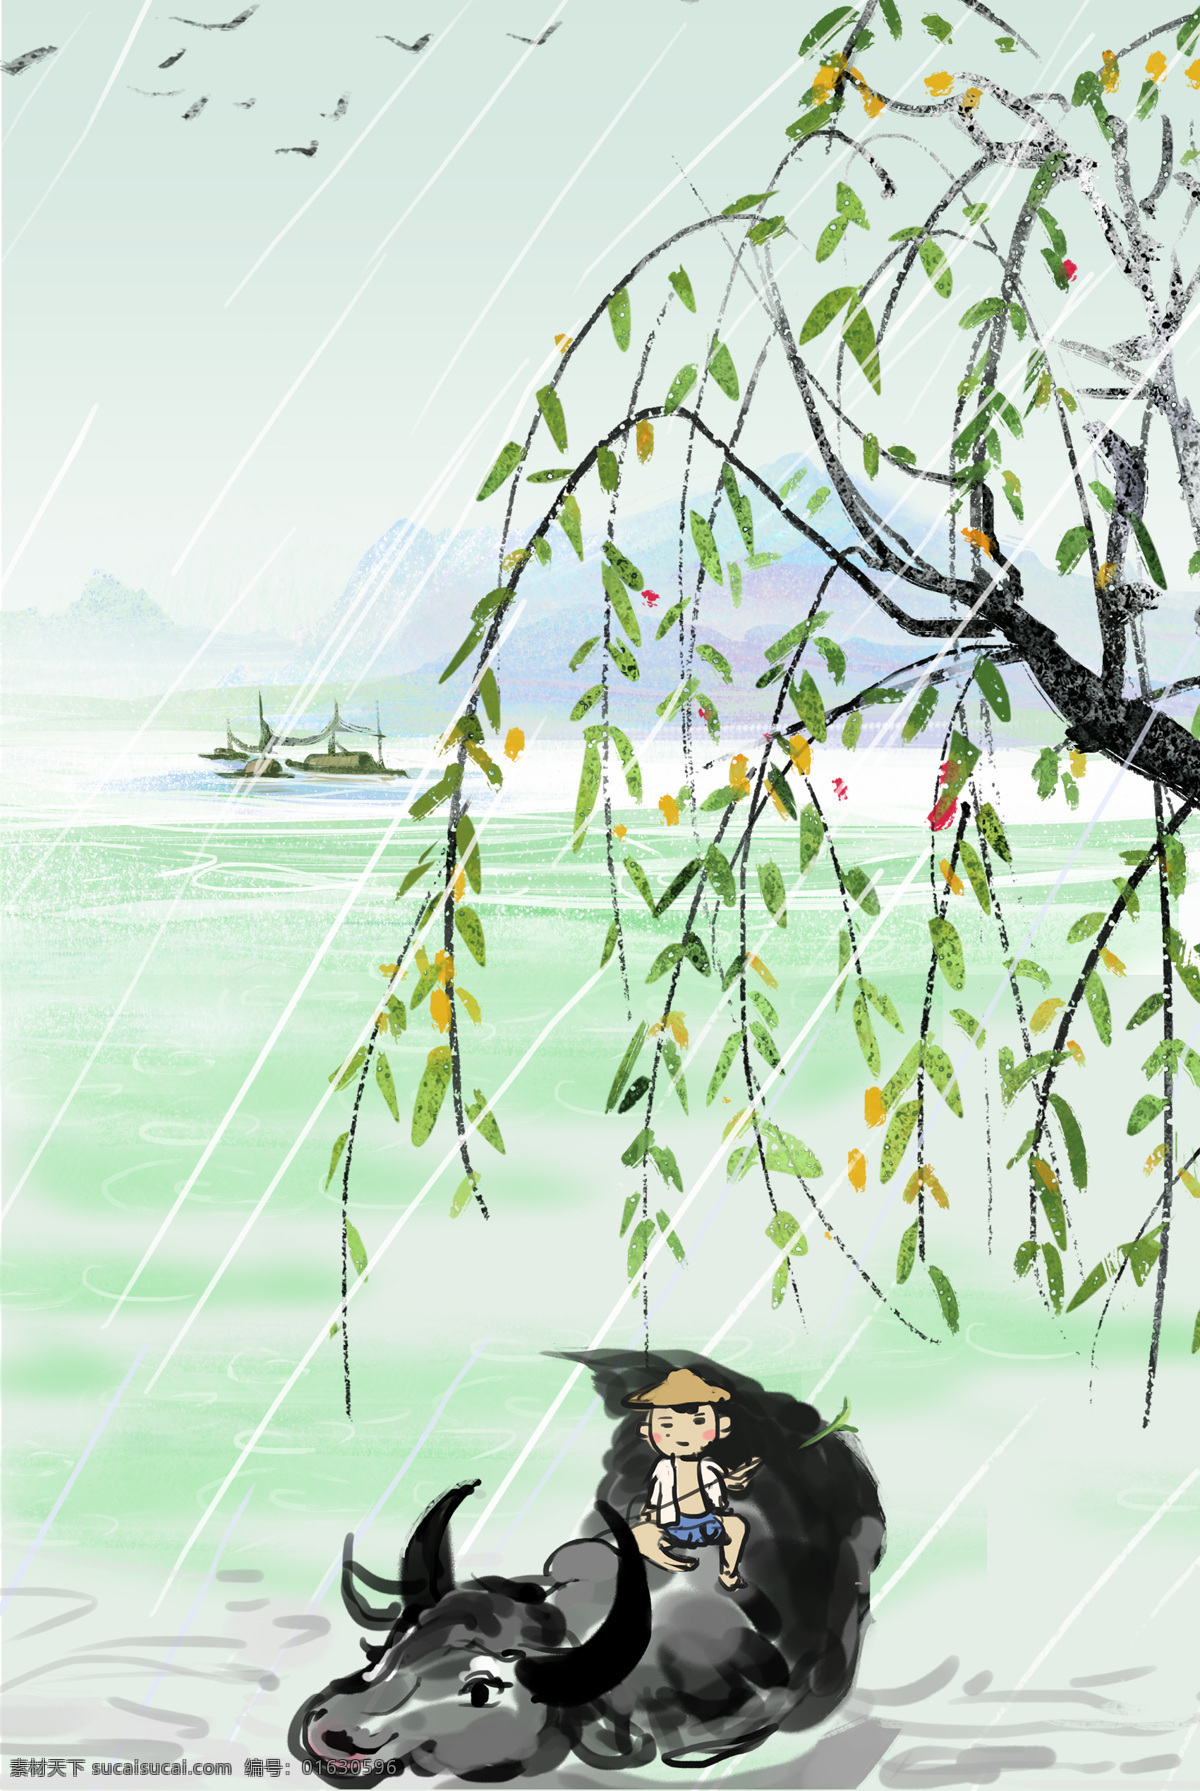 手绘 卡通 古典 水墨 清明节 背景 牛 柳树 孩童 小船 雨水 鸟儿